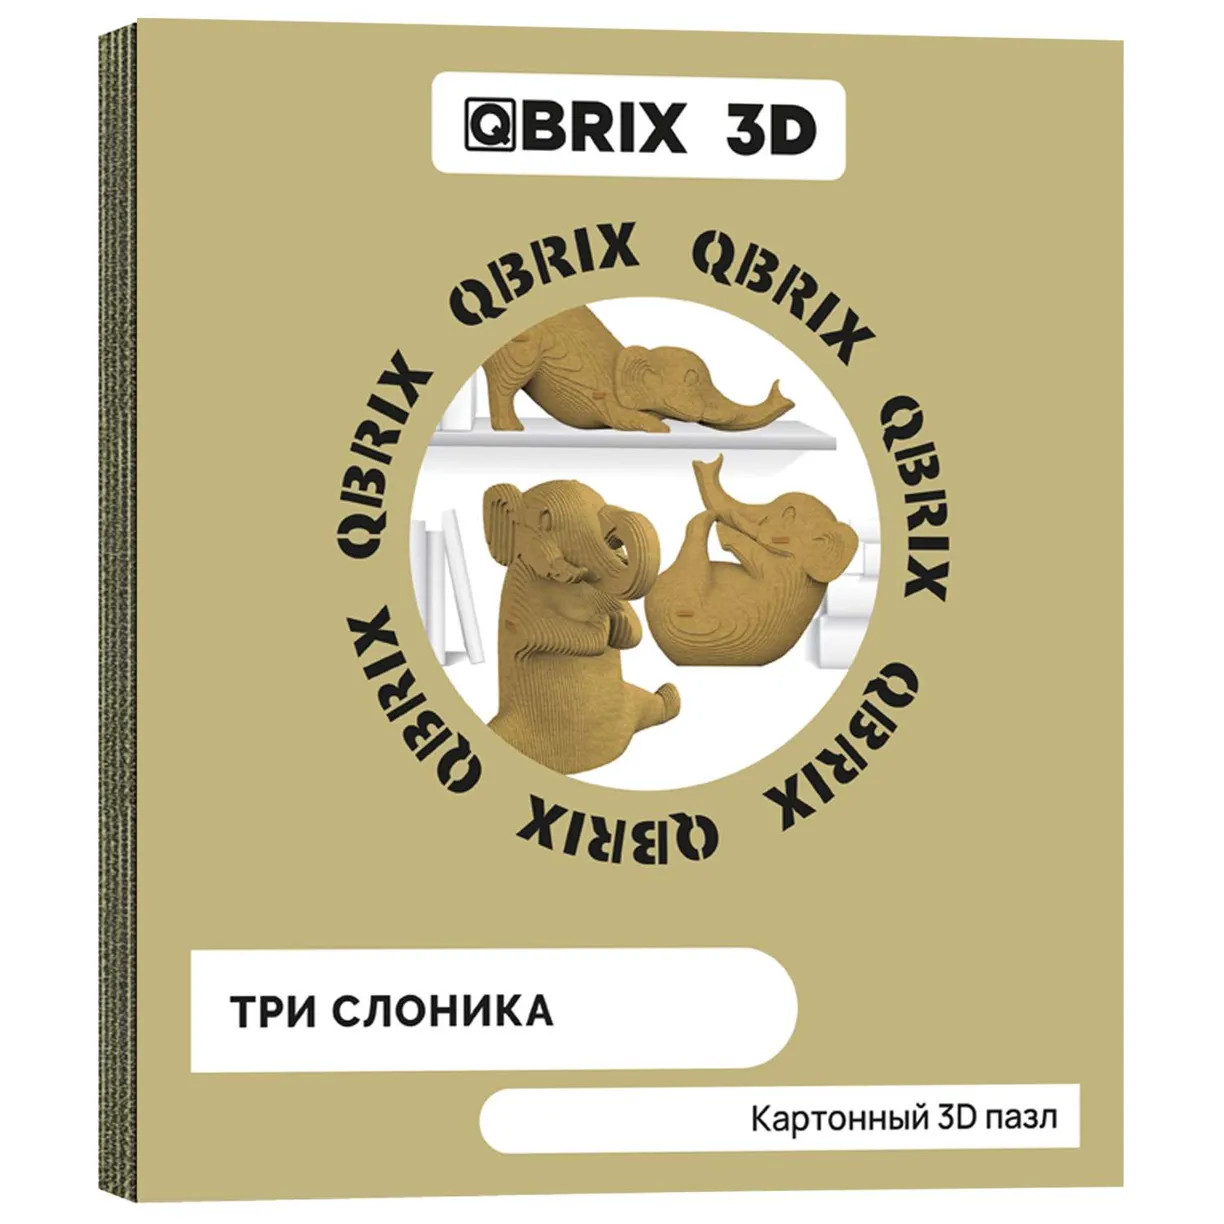 конструктор 12 Картонный 3D конструктор QBRIX 